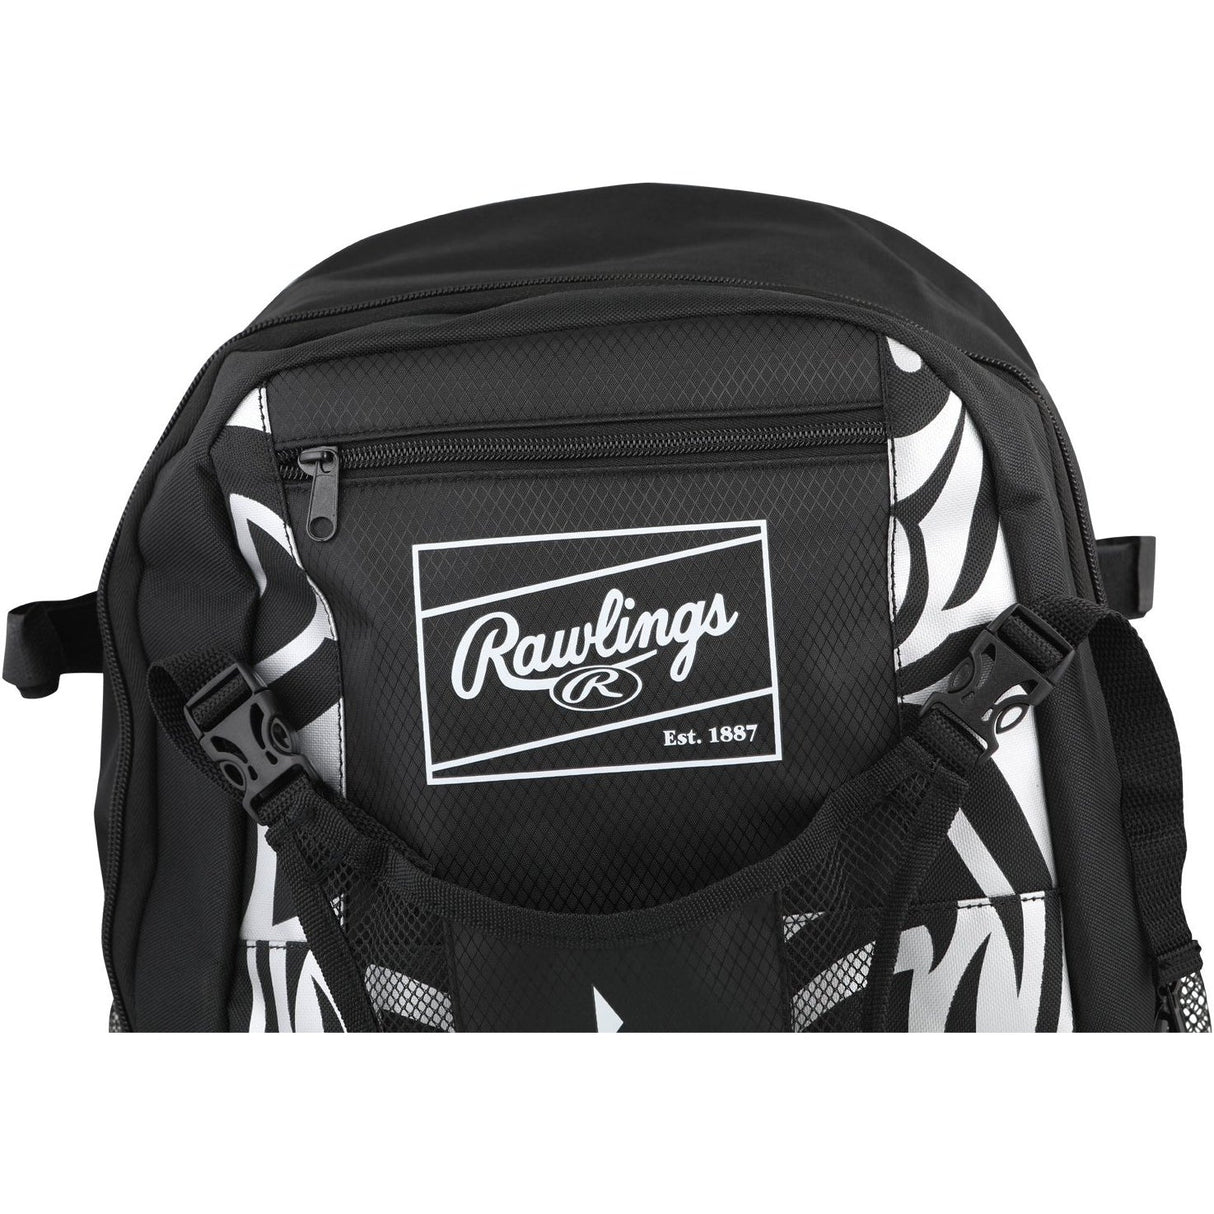 Youth Baseball and Softball Bag - Backpack - Batting Bag - T-Ball Bag –  Guardian Baseball